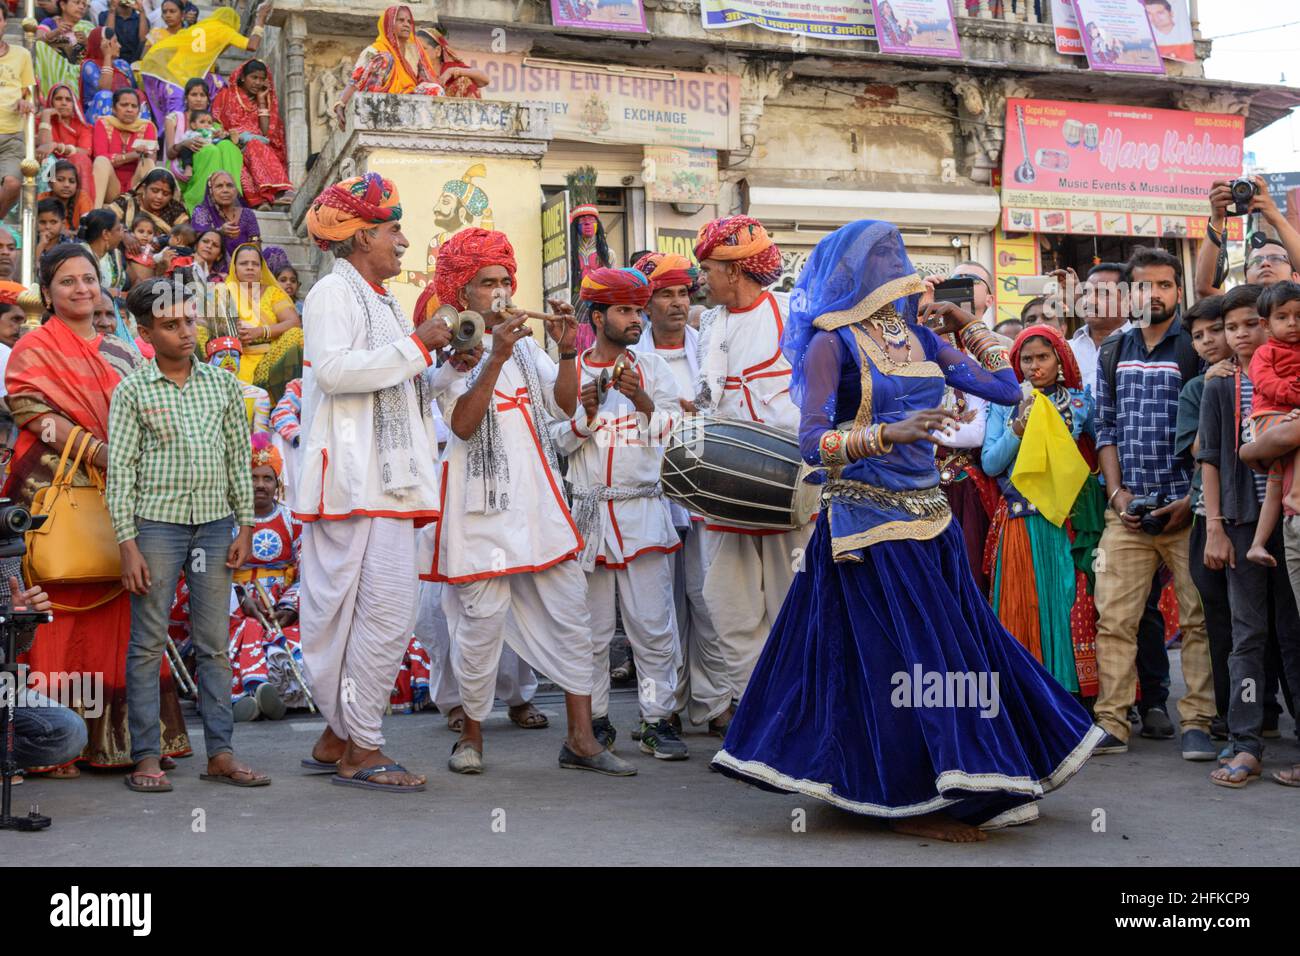 Les gens et les danseurs locaux célèbrent le festival coloré Mewar / Gangaur pour accueillir l'arrivée du printemps, Udaipur, Rajasthan, Inde, Asie du Sud Banque D'Images